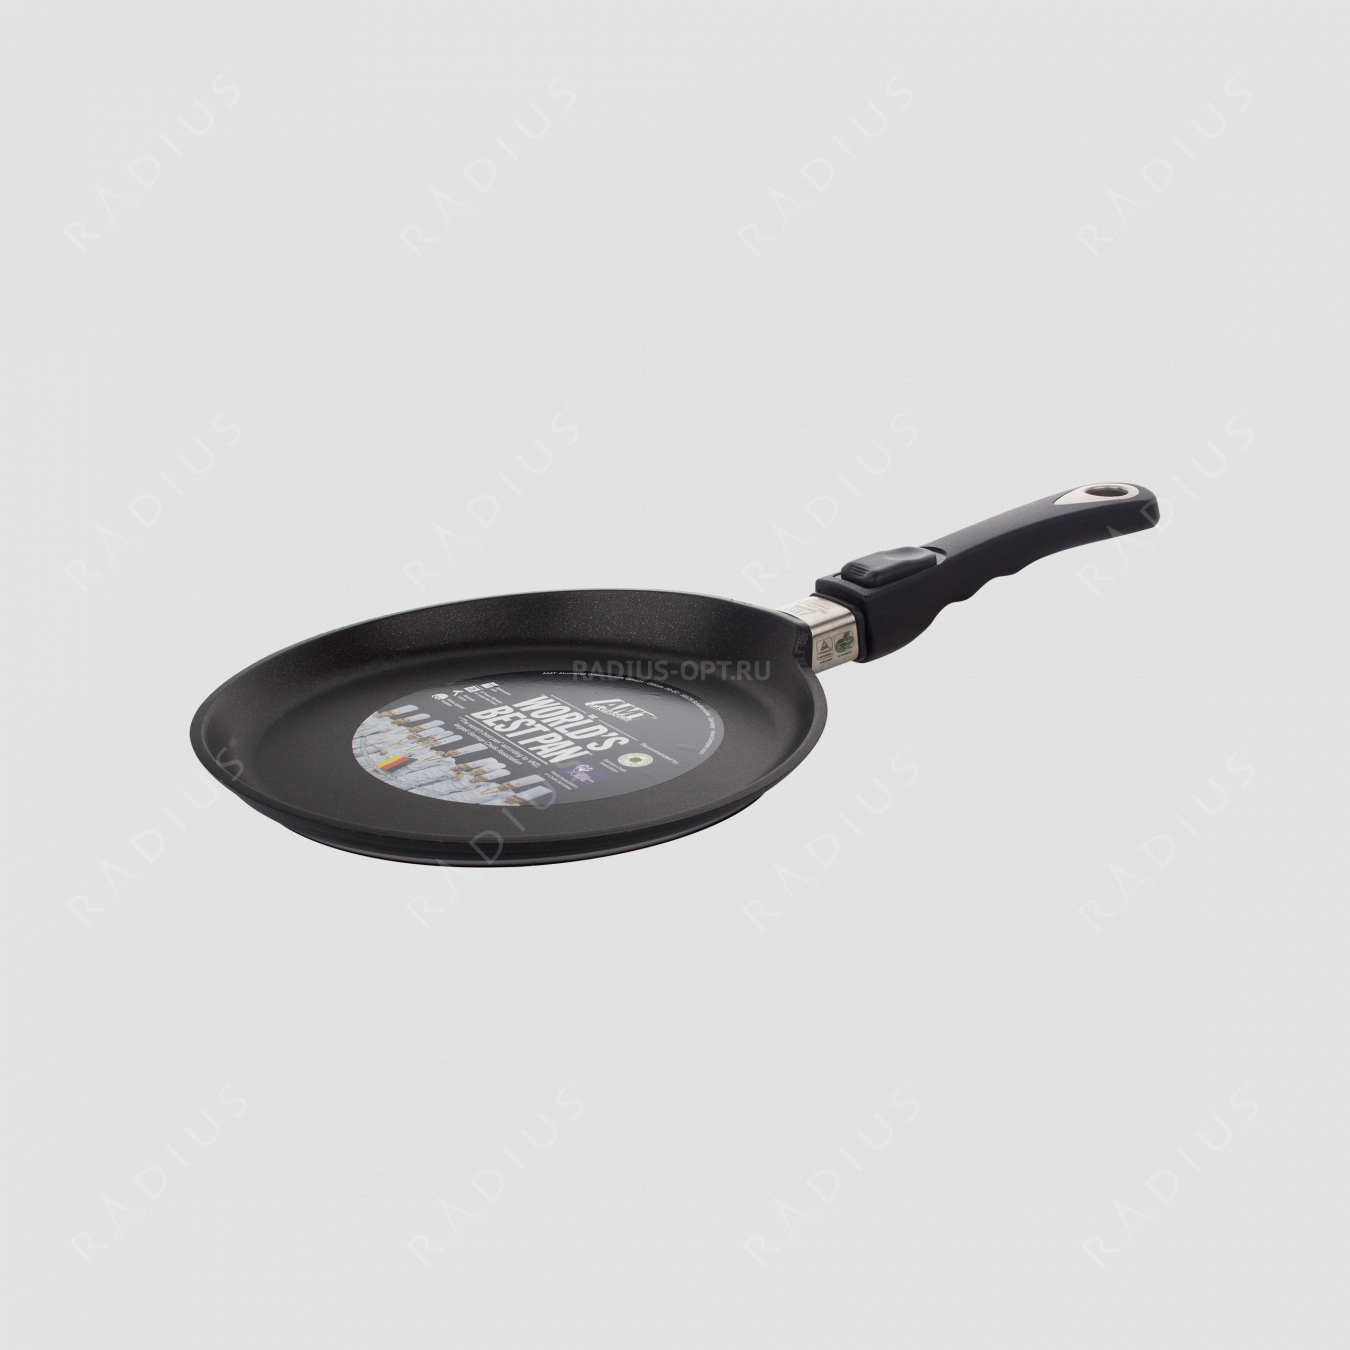 Алюминиевая сковорода блинная с антипригарным покрытием, диаметр 24 см, высота 1 см, съемная ручка, литой алюминий, толщина дна 10 мм, серия Frying Pans, AMT, Германия